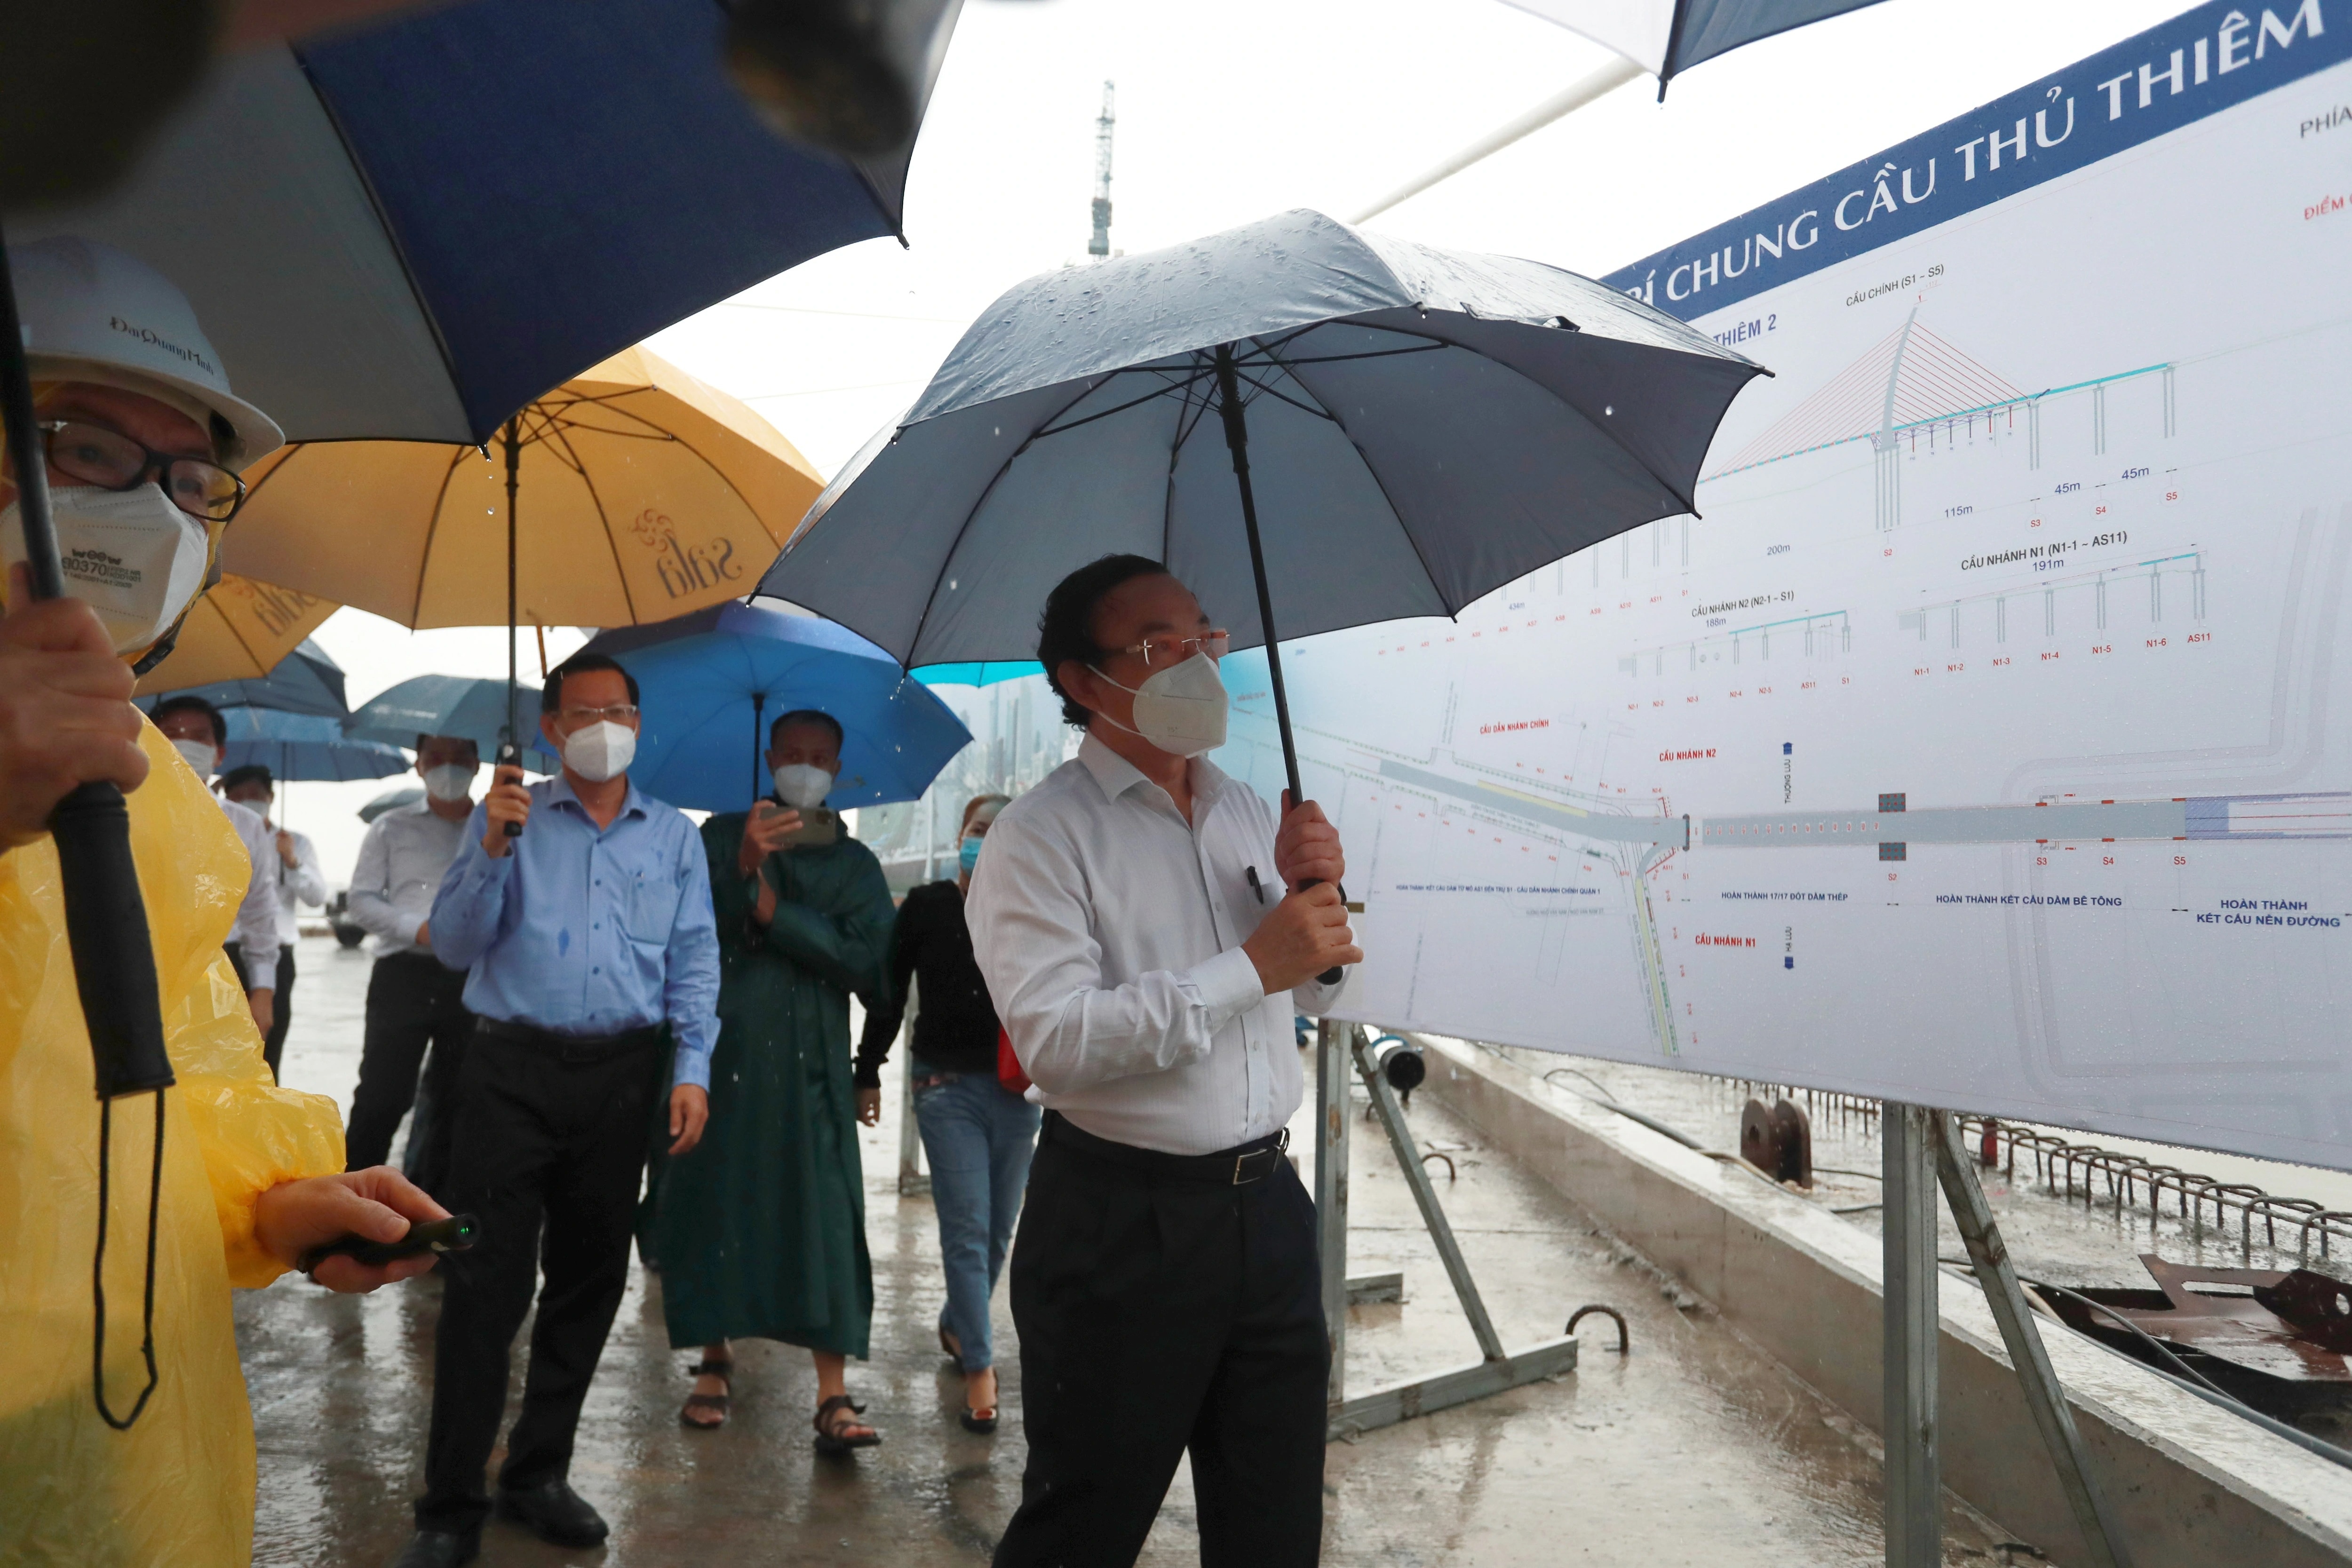 Lãnh đạo TPHCM đội mưa khảo sát cầu Thủ Thiêm 2 sau khi hợp long - 3